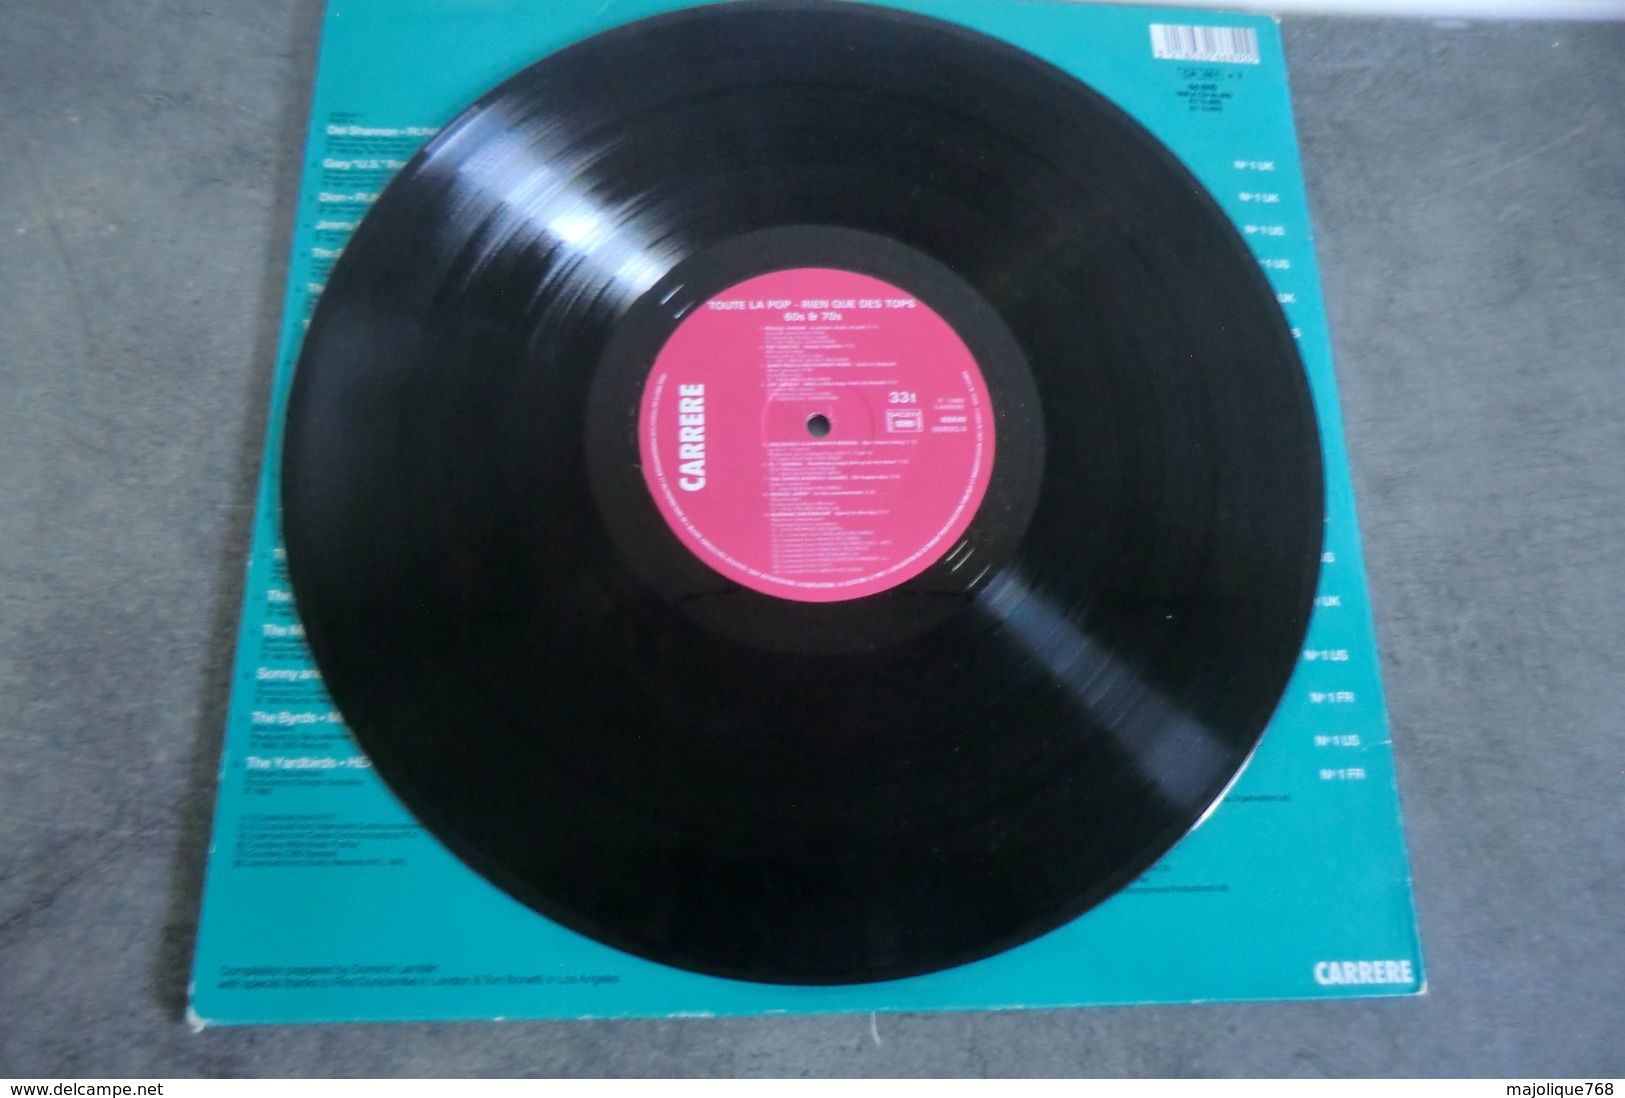 disque - toute la Pop rien que des Tops 60's 70's - carrere - 66890 - 3 disques -